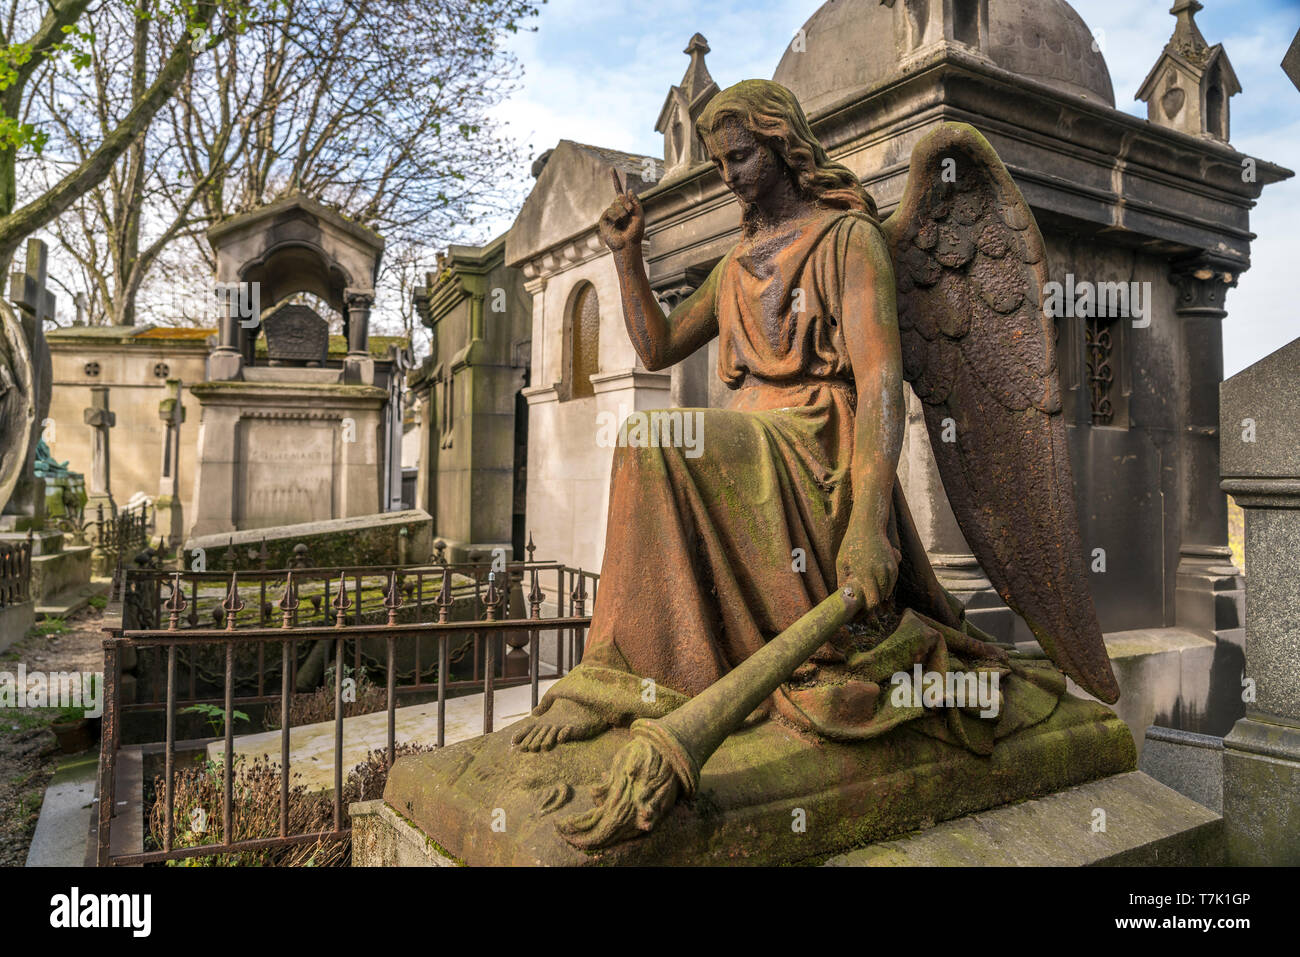 Engel  auf dem Pariser Friedhof Cimetiere de Montmartre Paris, Frankreich  | angel statue  on Montmartre Cemetery, Paris, France Stock Photo